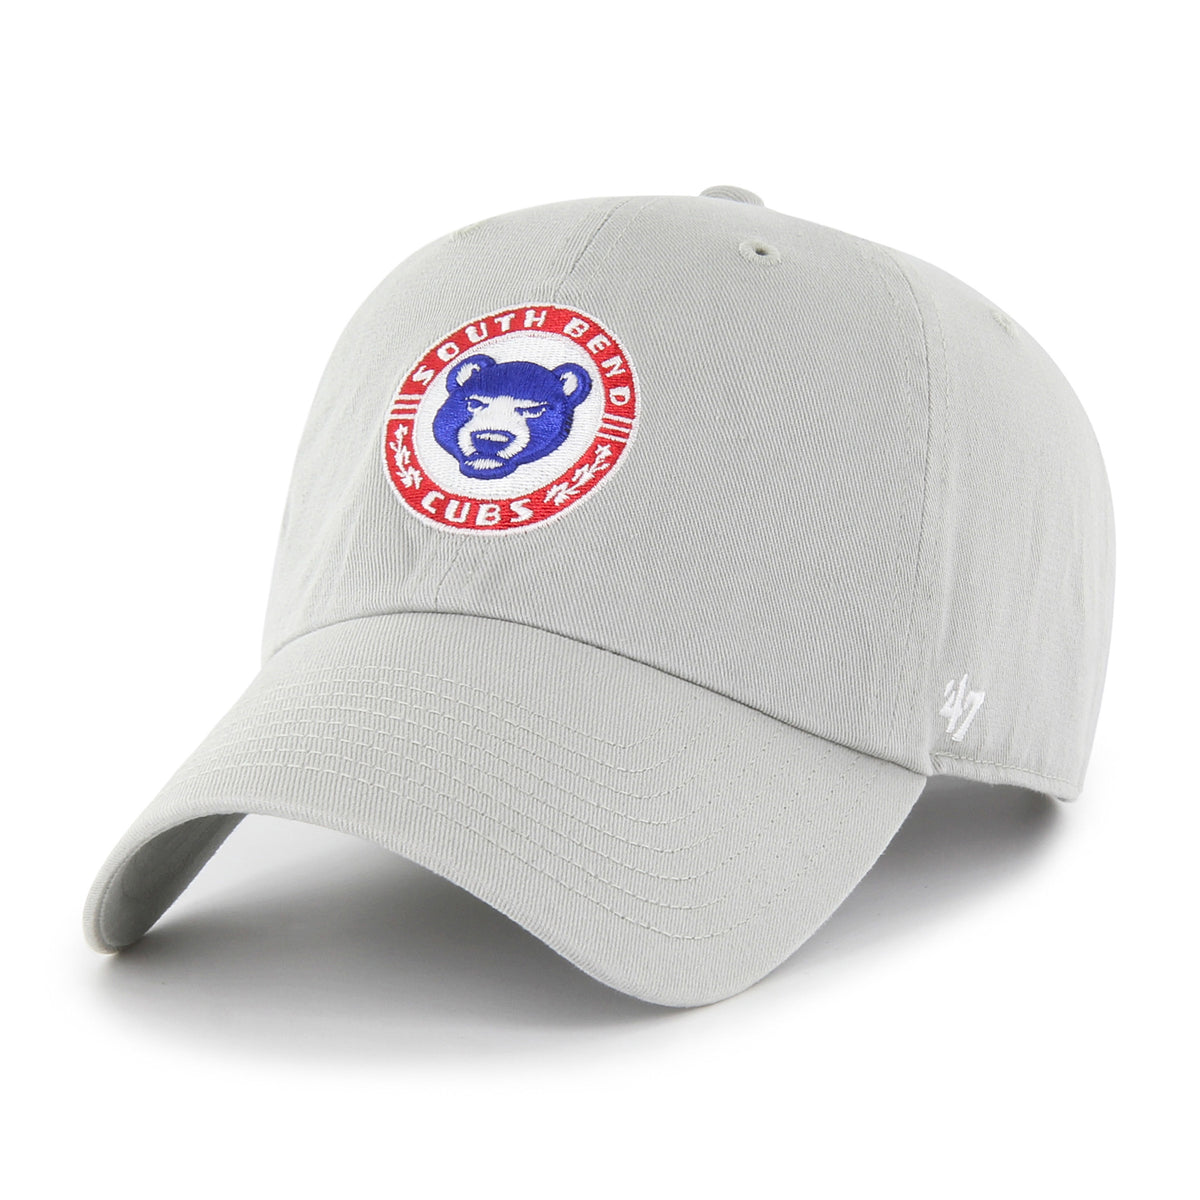 Chicago cubs 47 brand Adjustable hat - Gem